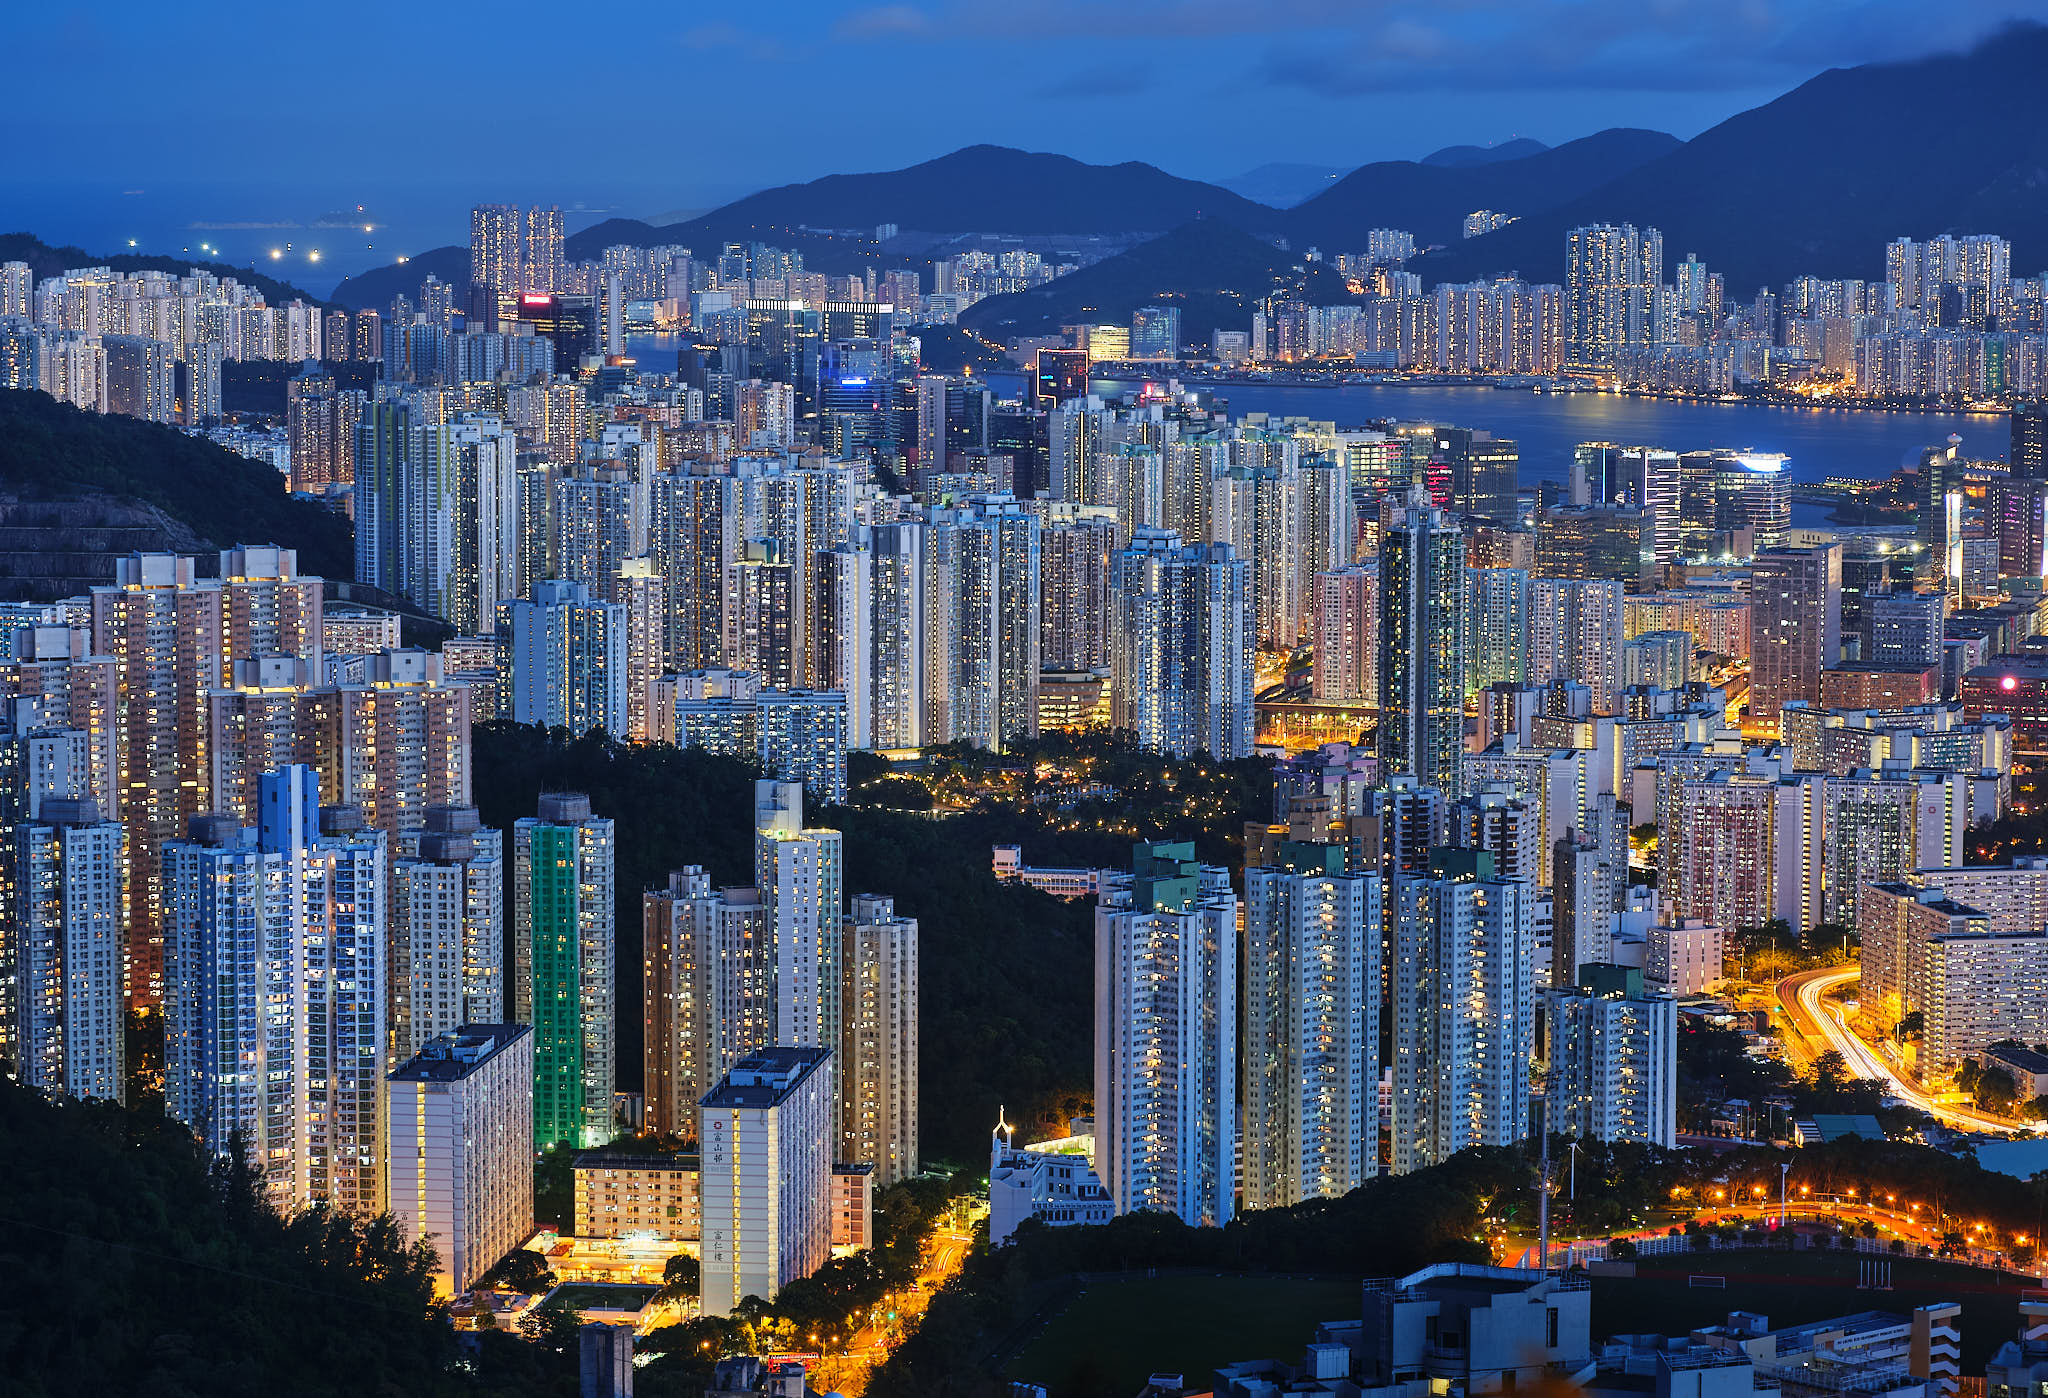 Hong Kong Kowloon Apartments at blue hour